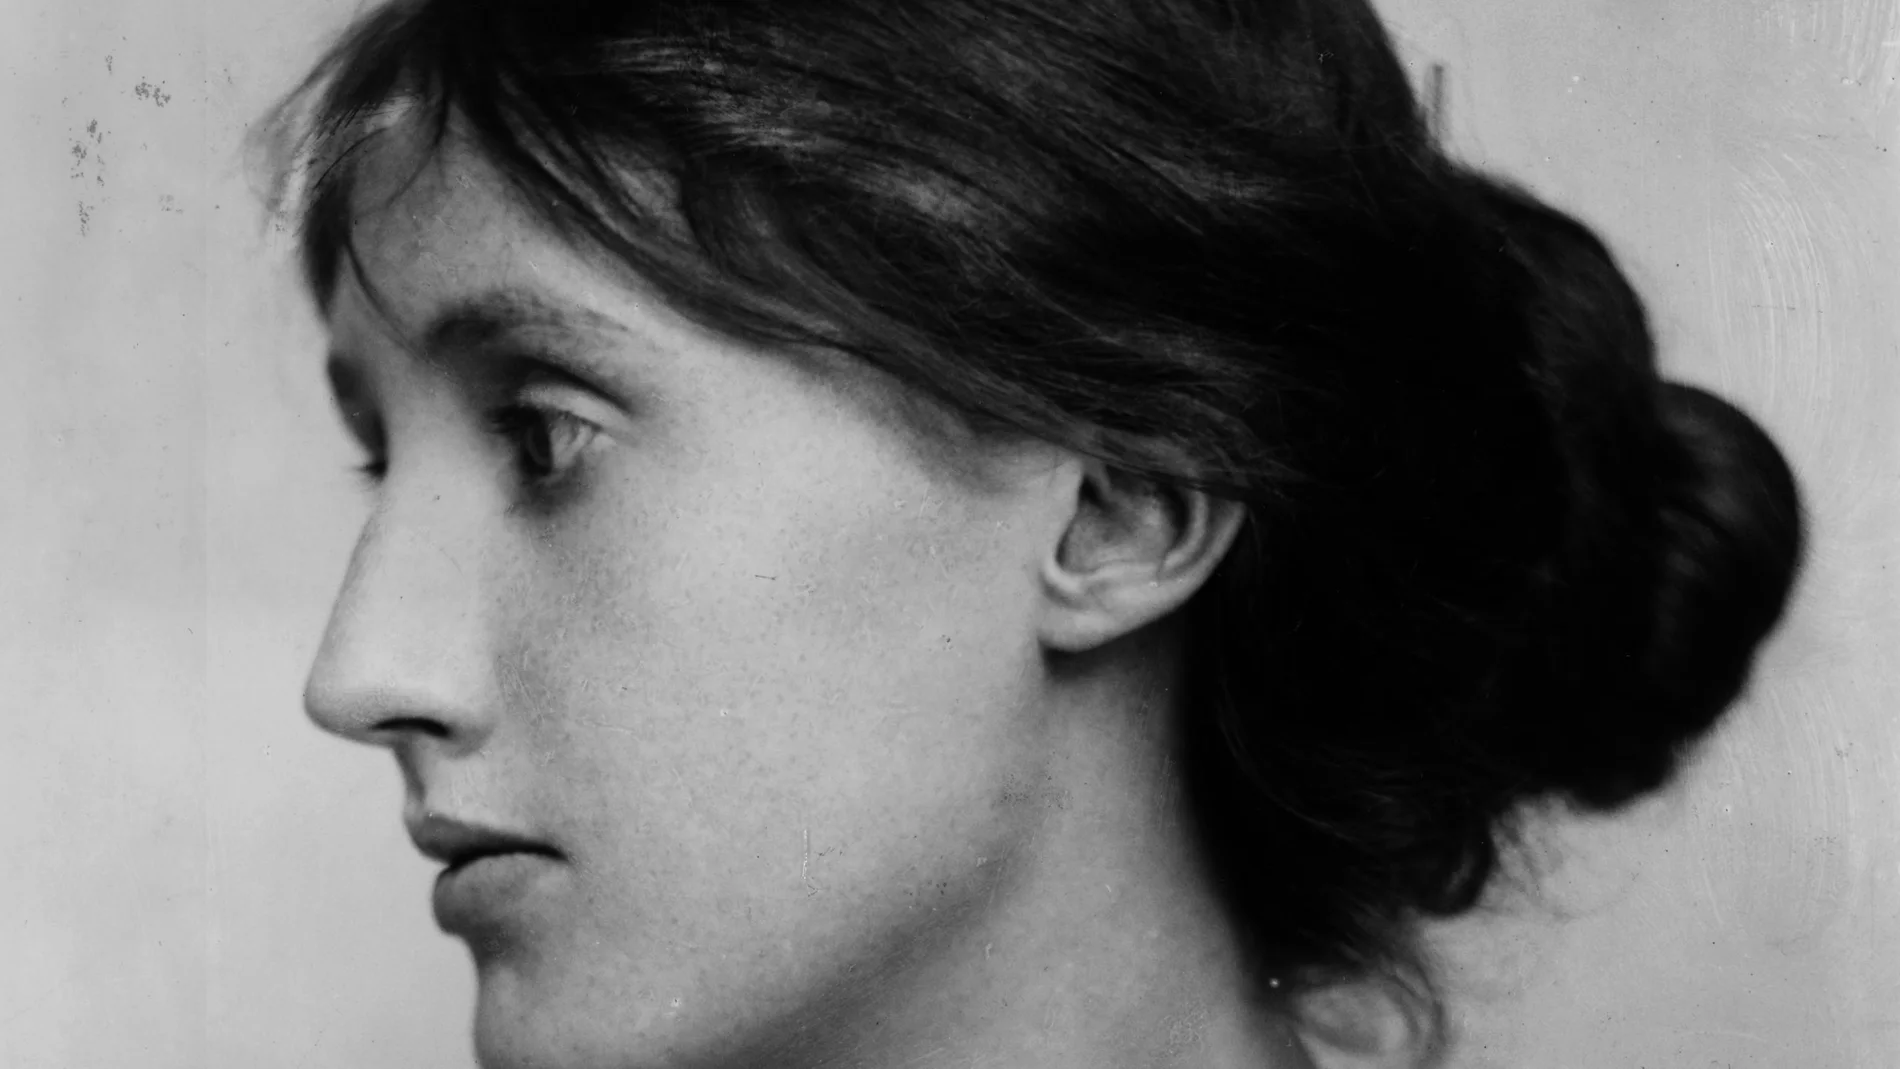 Virginia Woolf, una de las escritoras feministas más icónicas del siglo XX